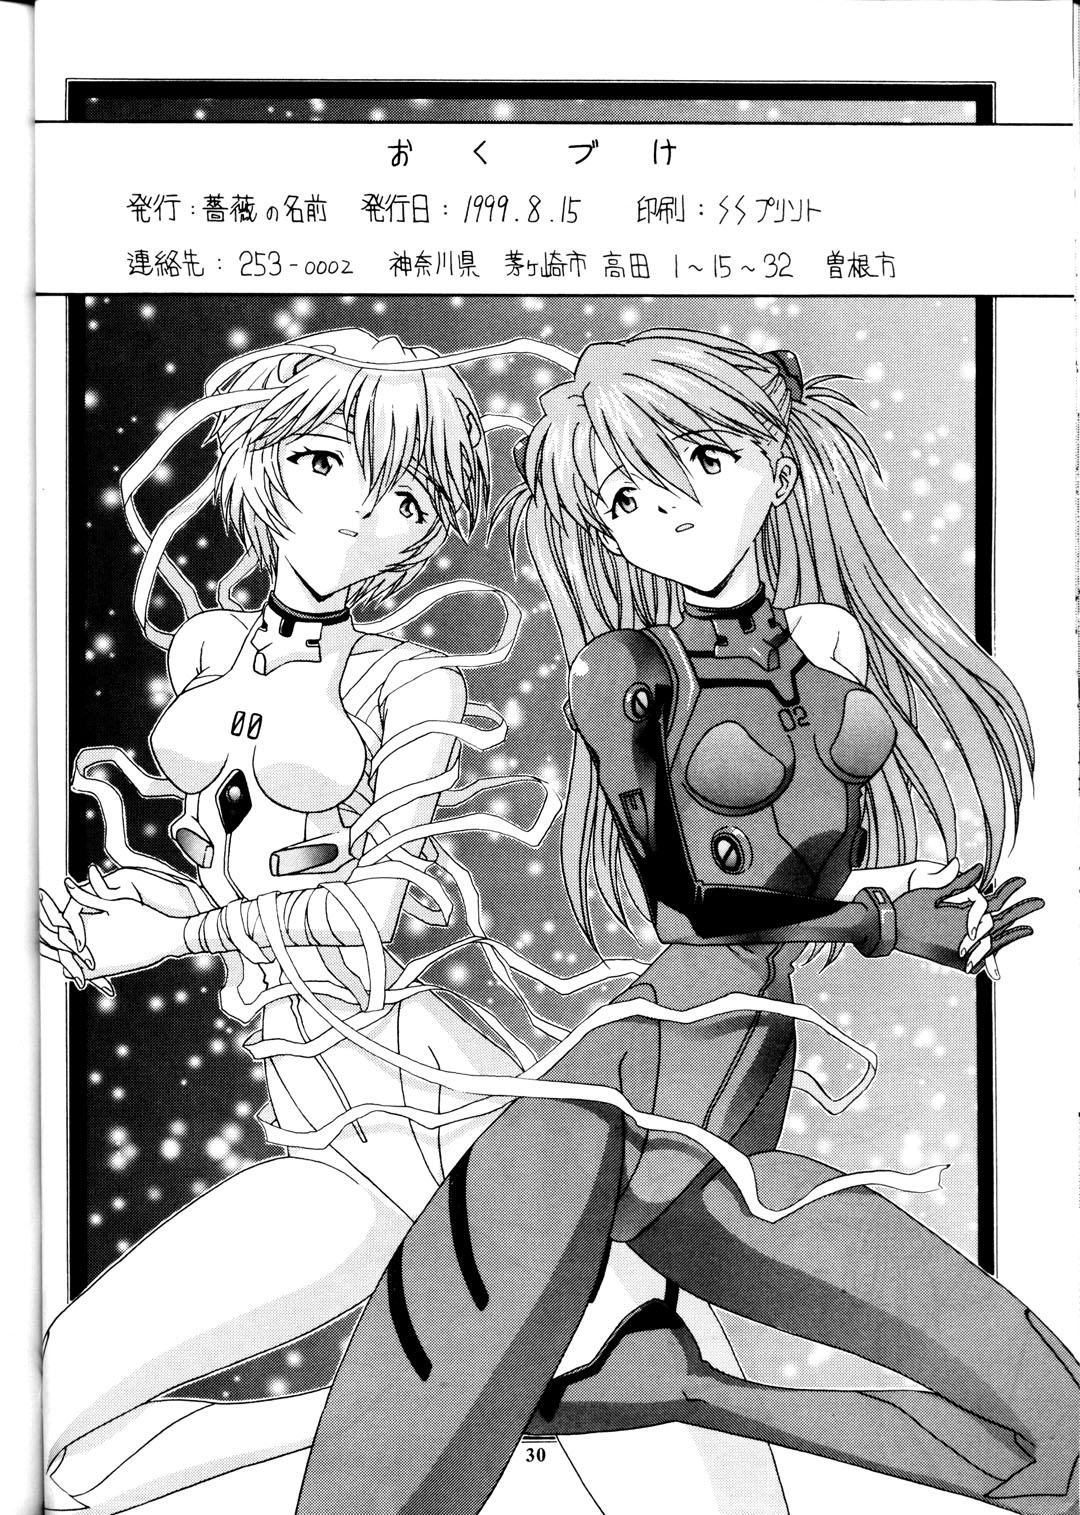 Arrecha Kamigami No Tasogare 4 - Neon genesis evangelion Interracial Sex - Page 29